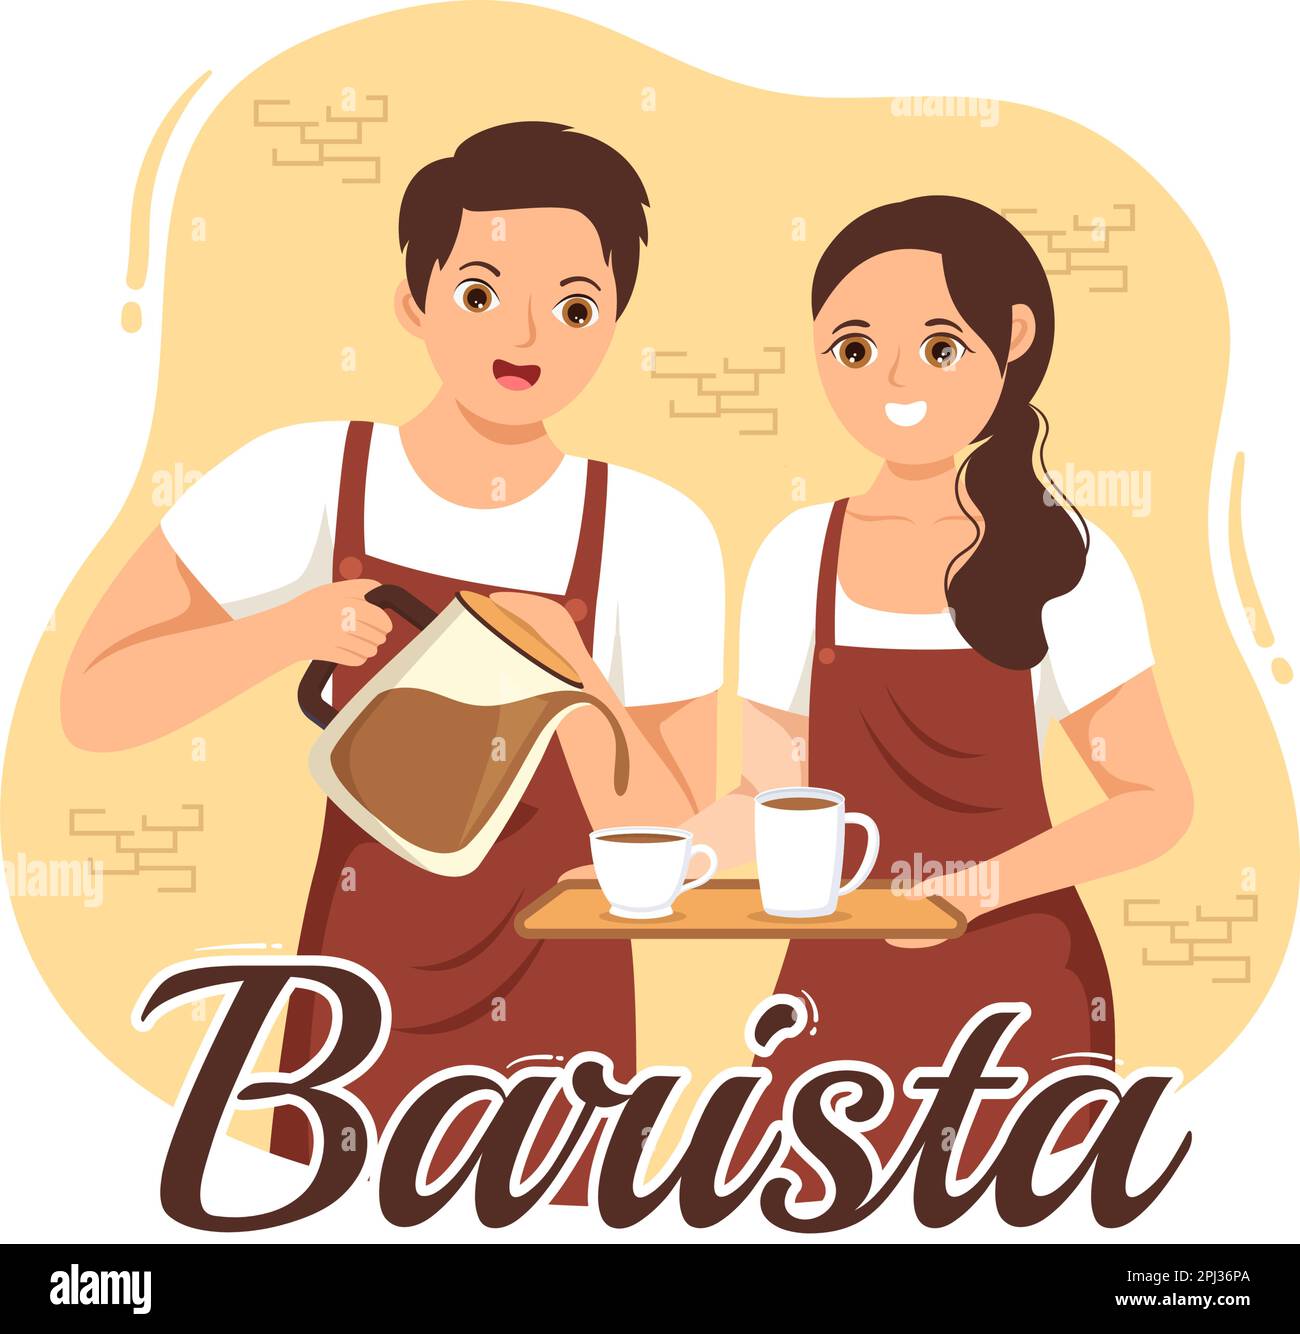 Barista Illustration: Tragen einer Stehschürze zum Zubereiten von Kaffee für Gäste in einer flachen, handgezeichneten Landing-Page oder Webbannervorlage Stock Vektor